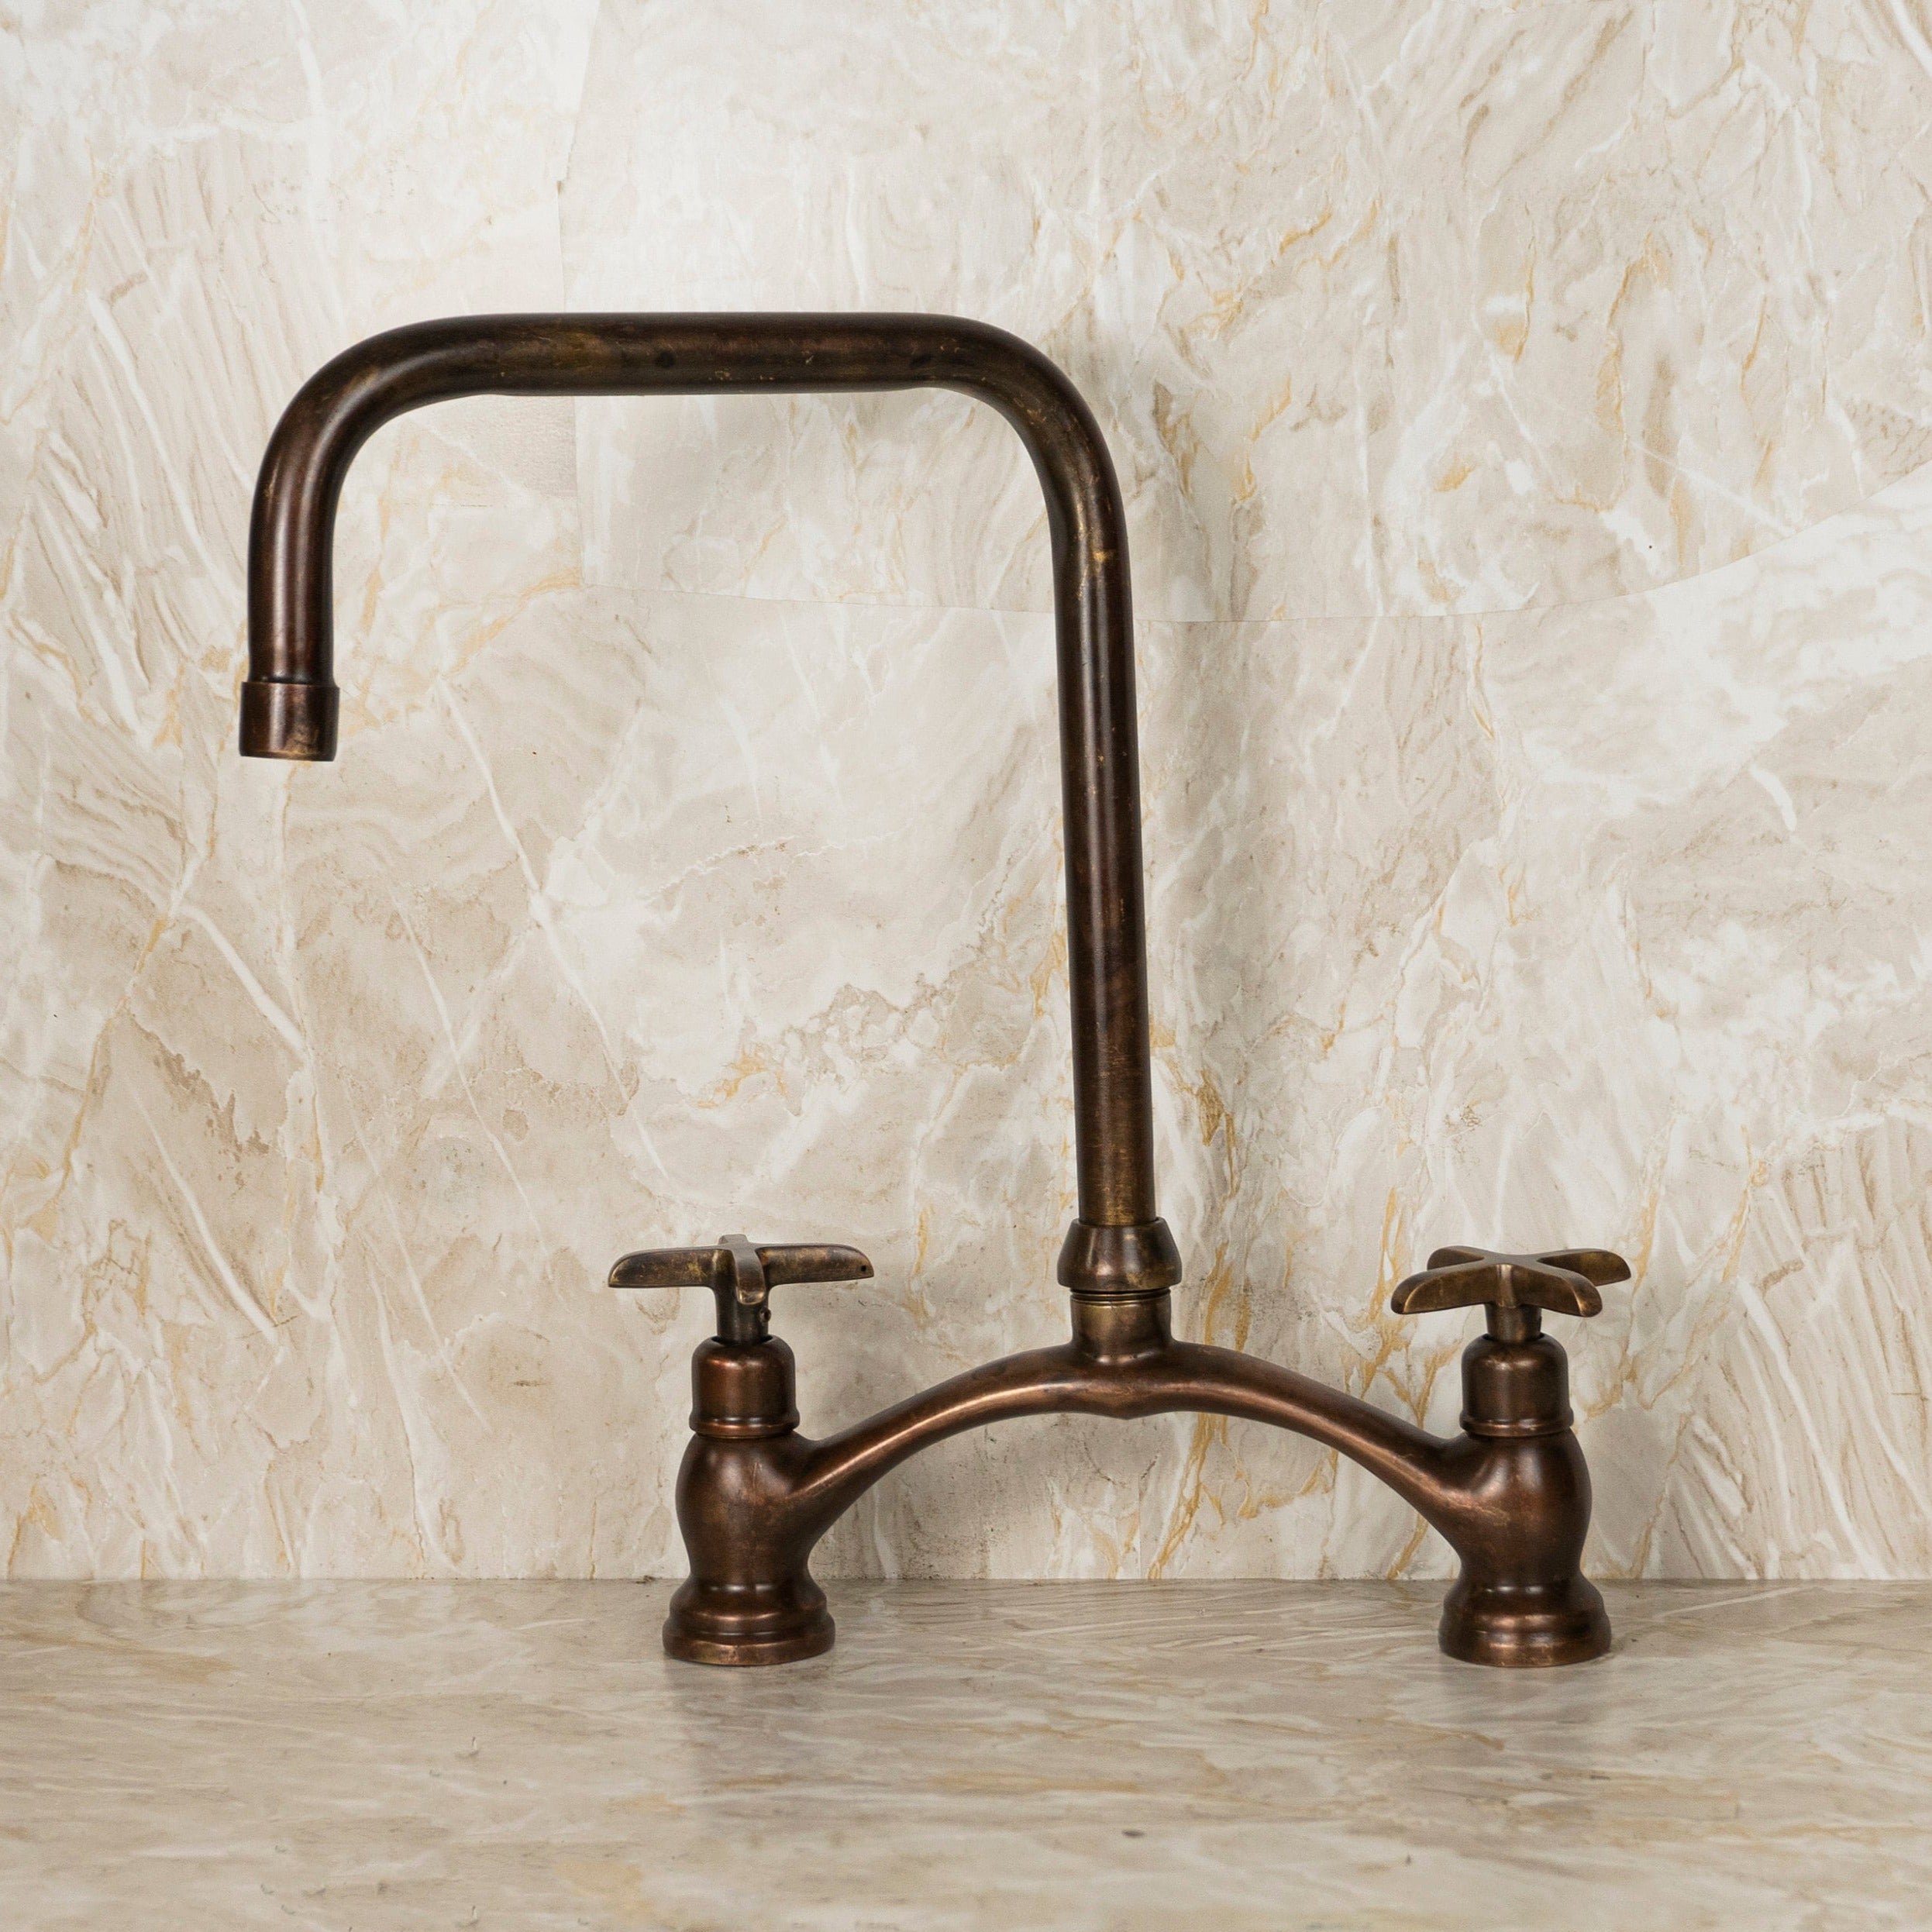 Bronze Bridge Kitchen Faucet - Vintage Copper Faucet for Farmhouse Sink - Magical Elegance